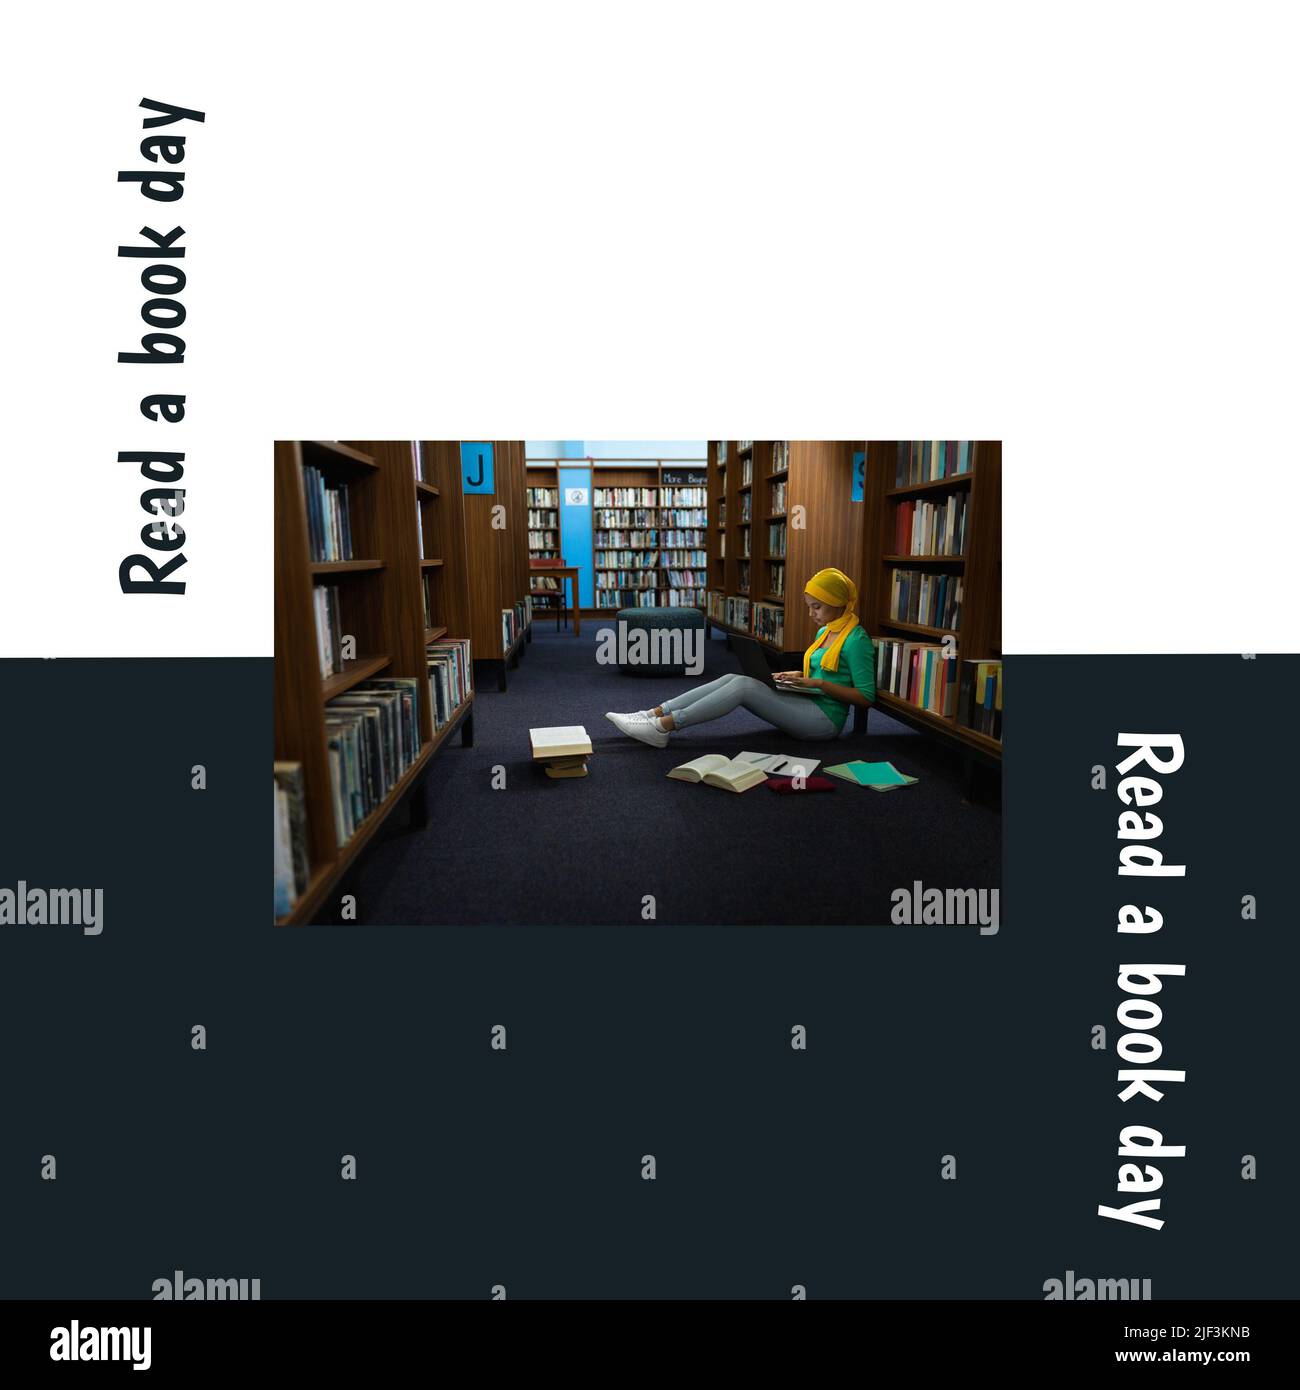 Digitales Bild der afroamerikanischen jungen Frau, die Buch in der Bibliothek liest, mit einem Buchtag-Text Stockfoto